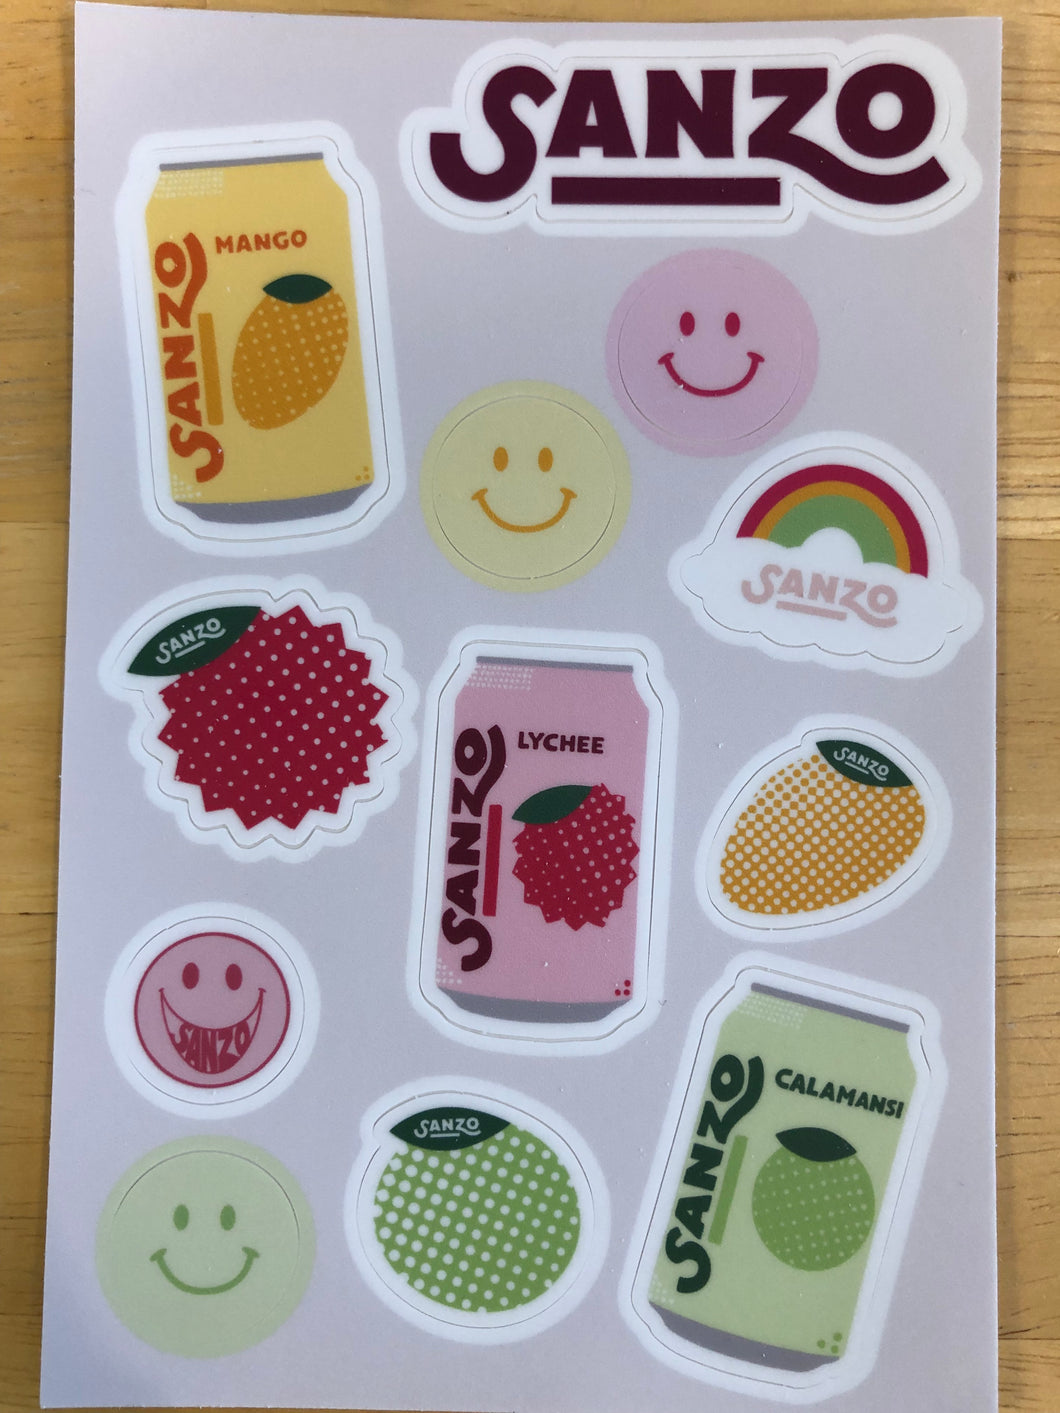 (*FREE*) Sanzo Sticker Sheet